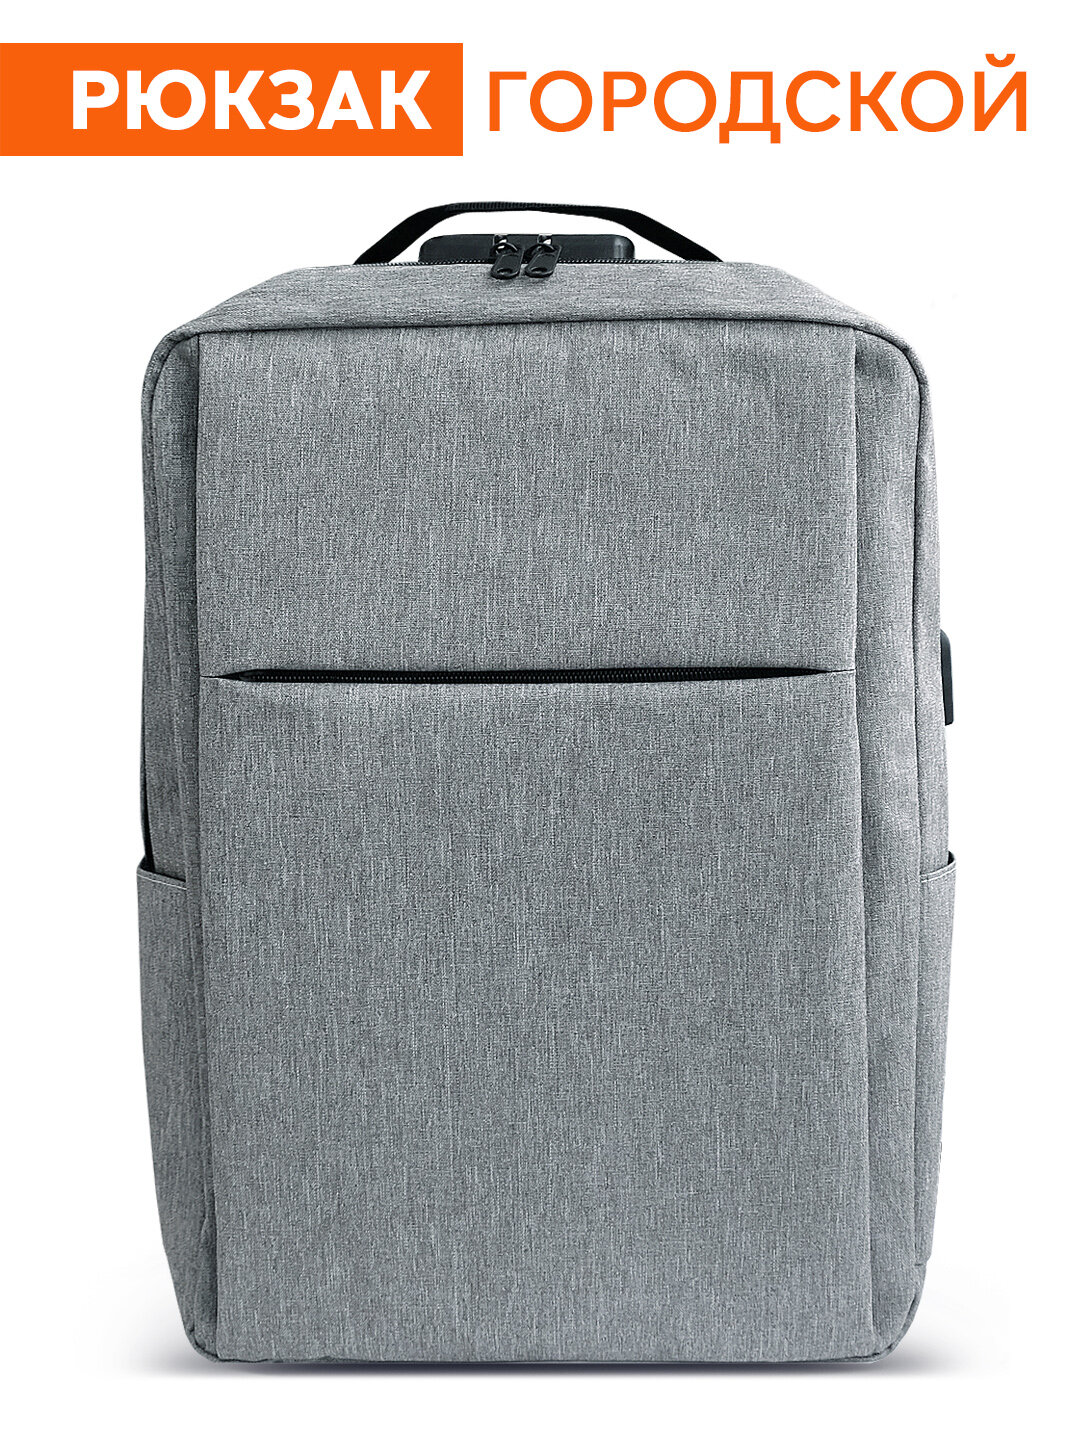 Рюкзак деловой, городской универсальный. Для ноутбука 15.6, AUX+USB. Серый.